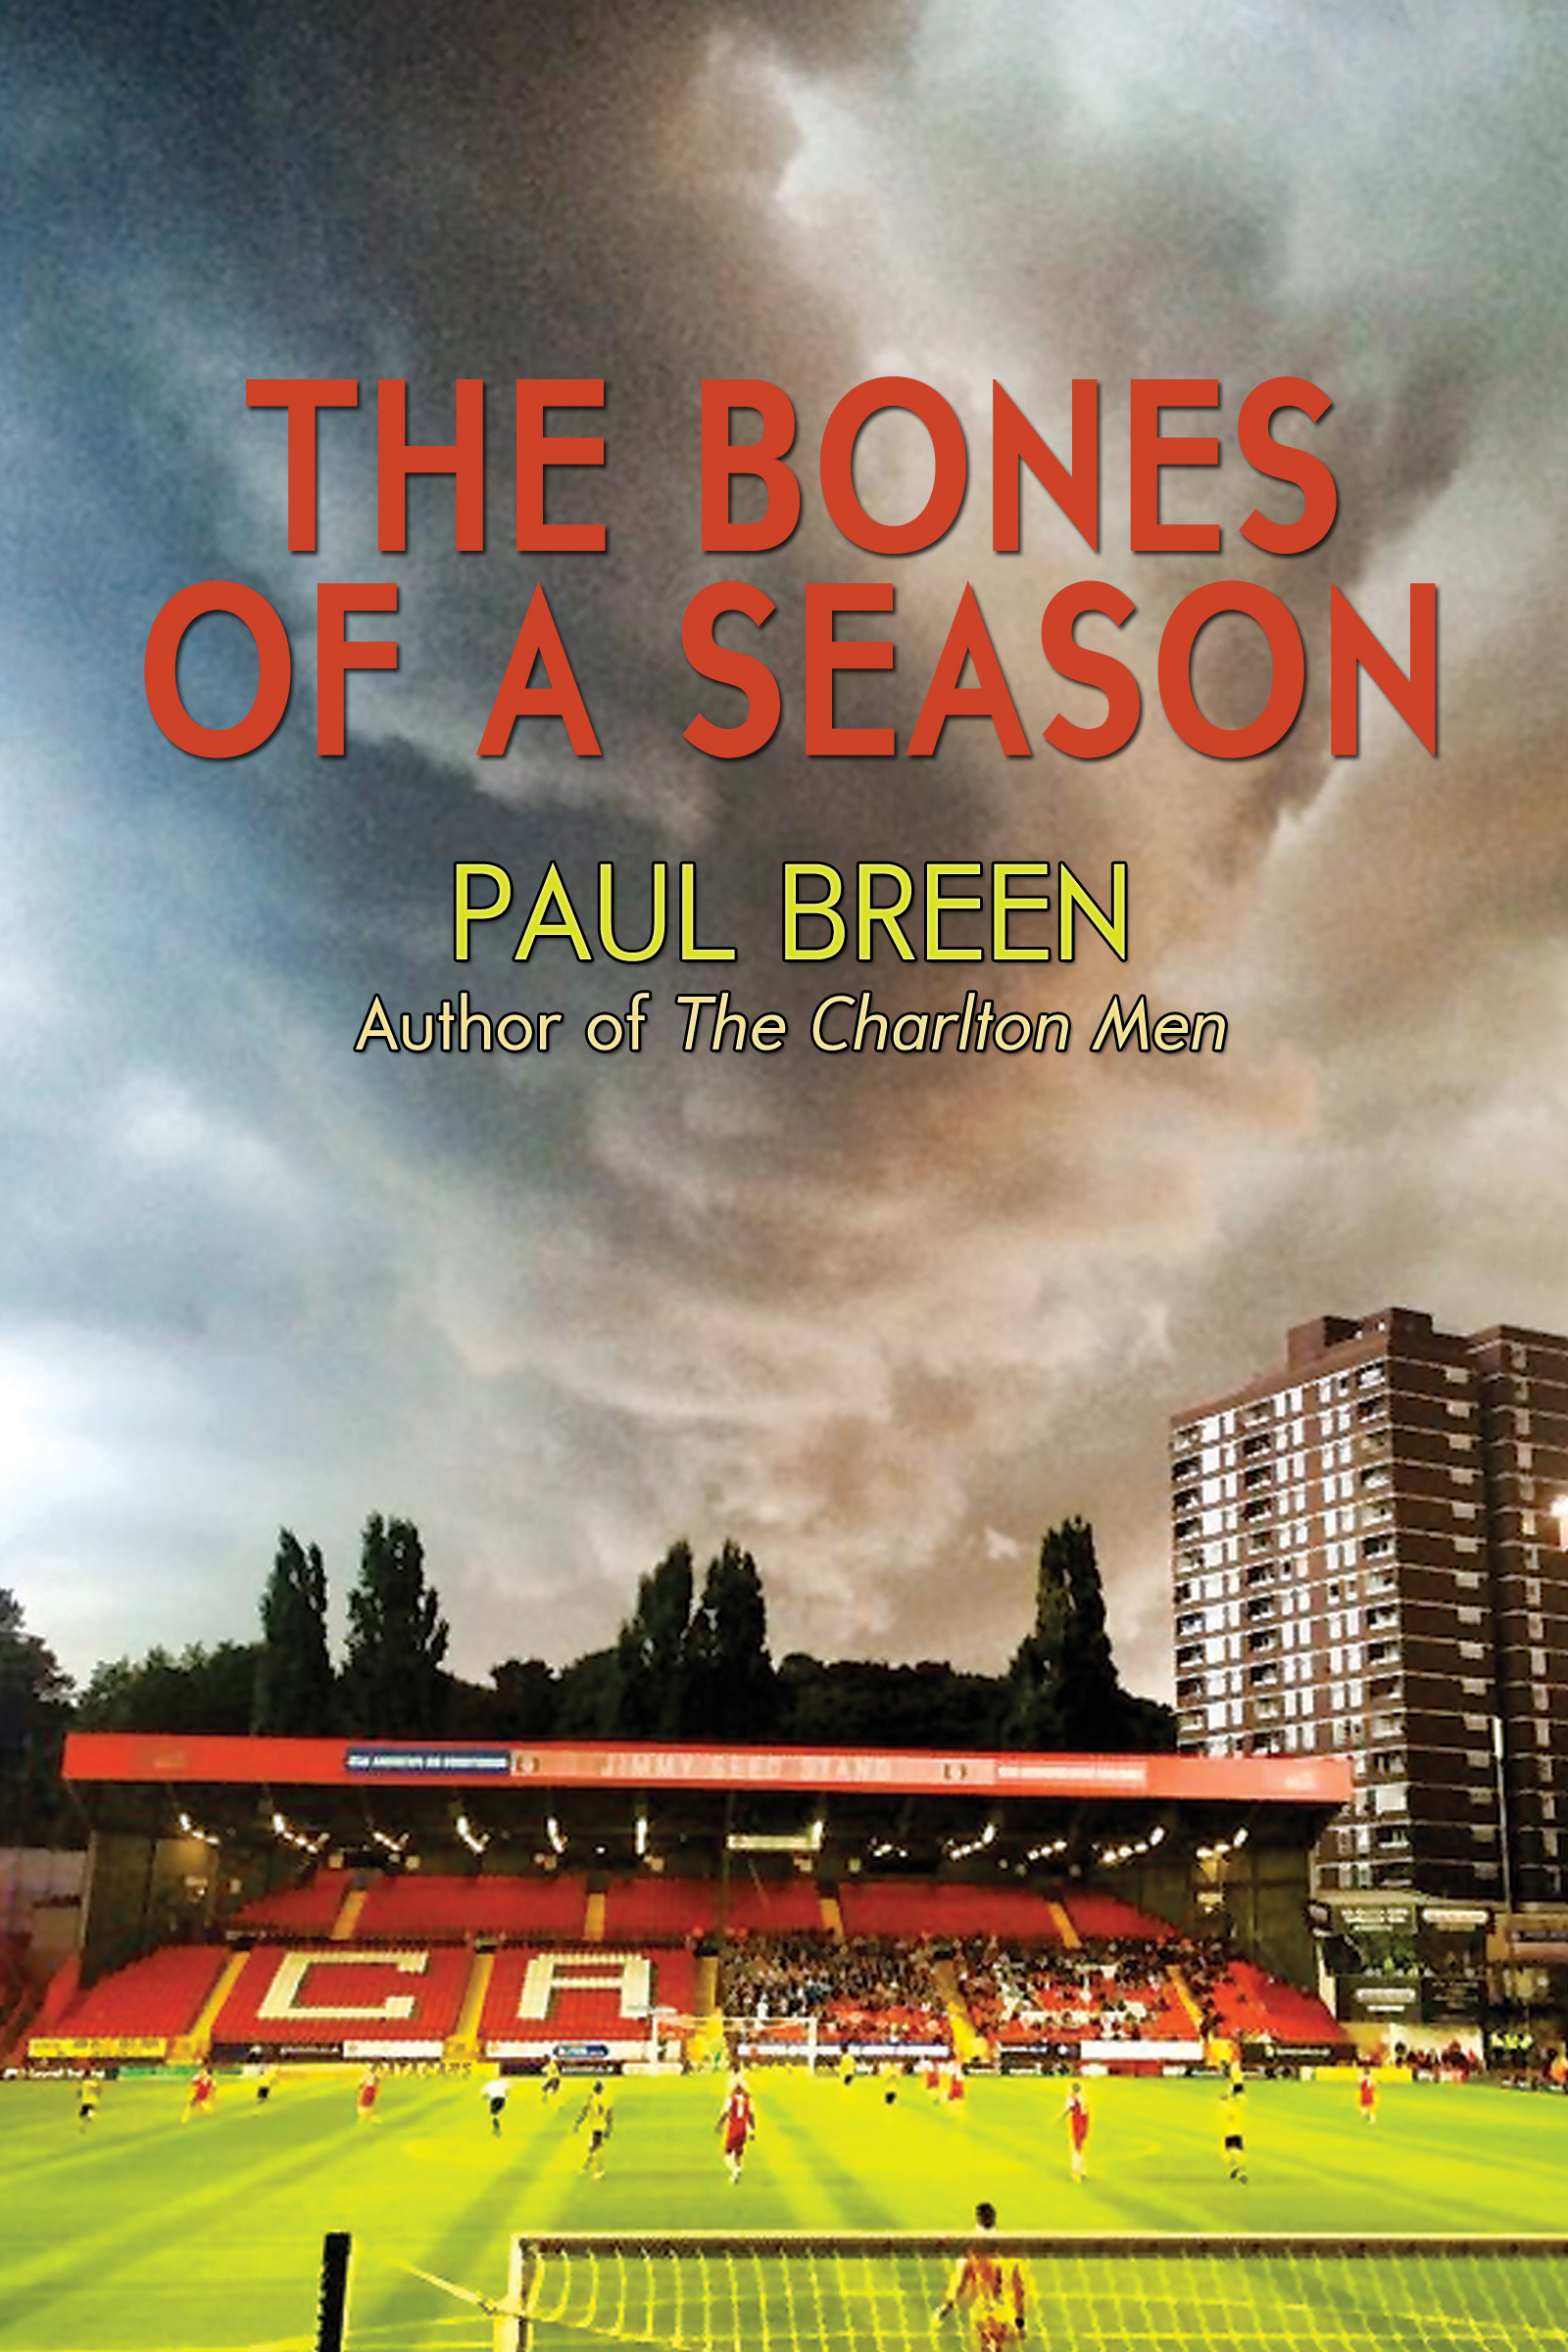 THE BONES OF A SEASON by Paul Breen